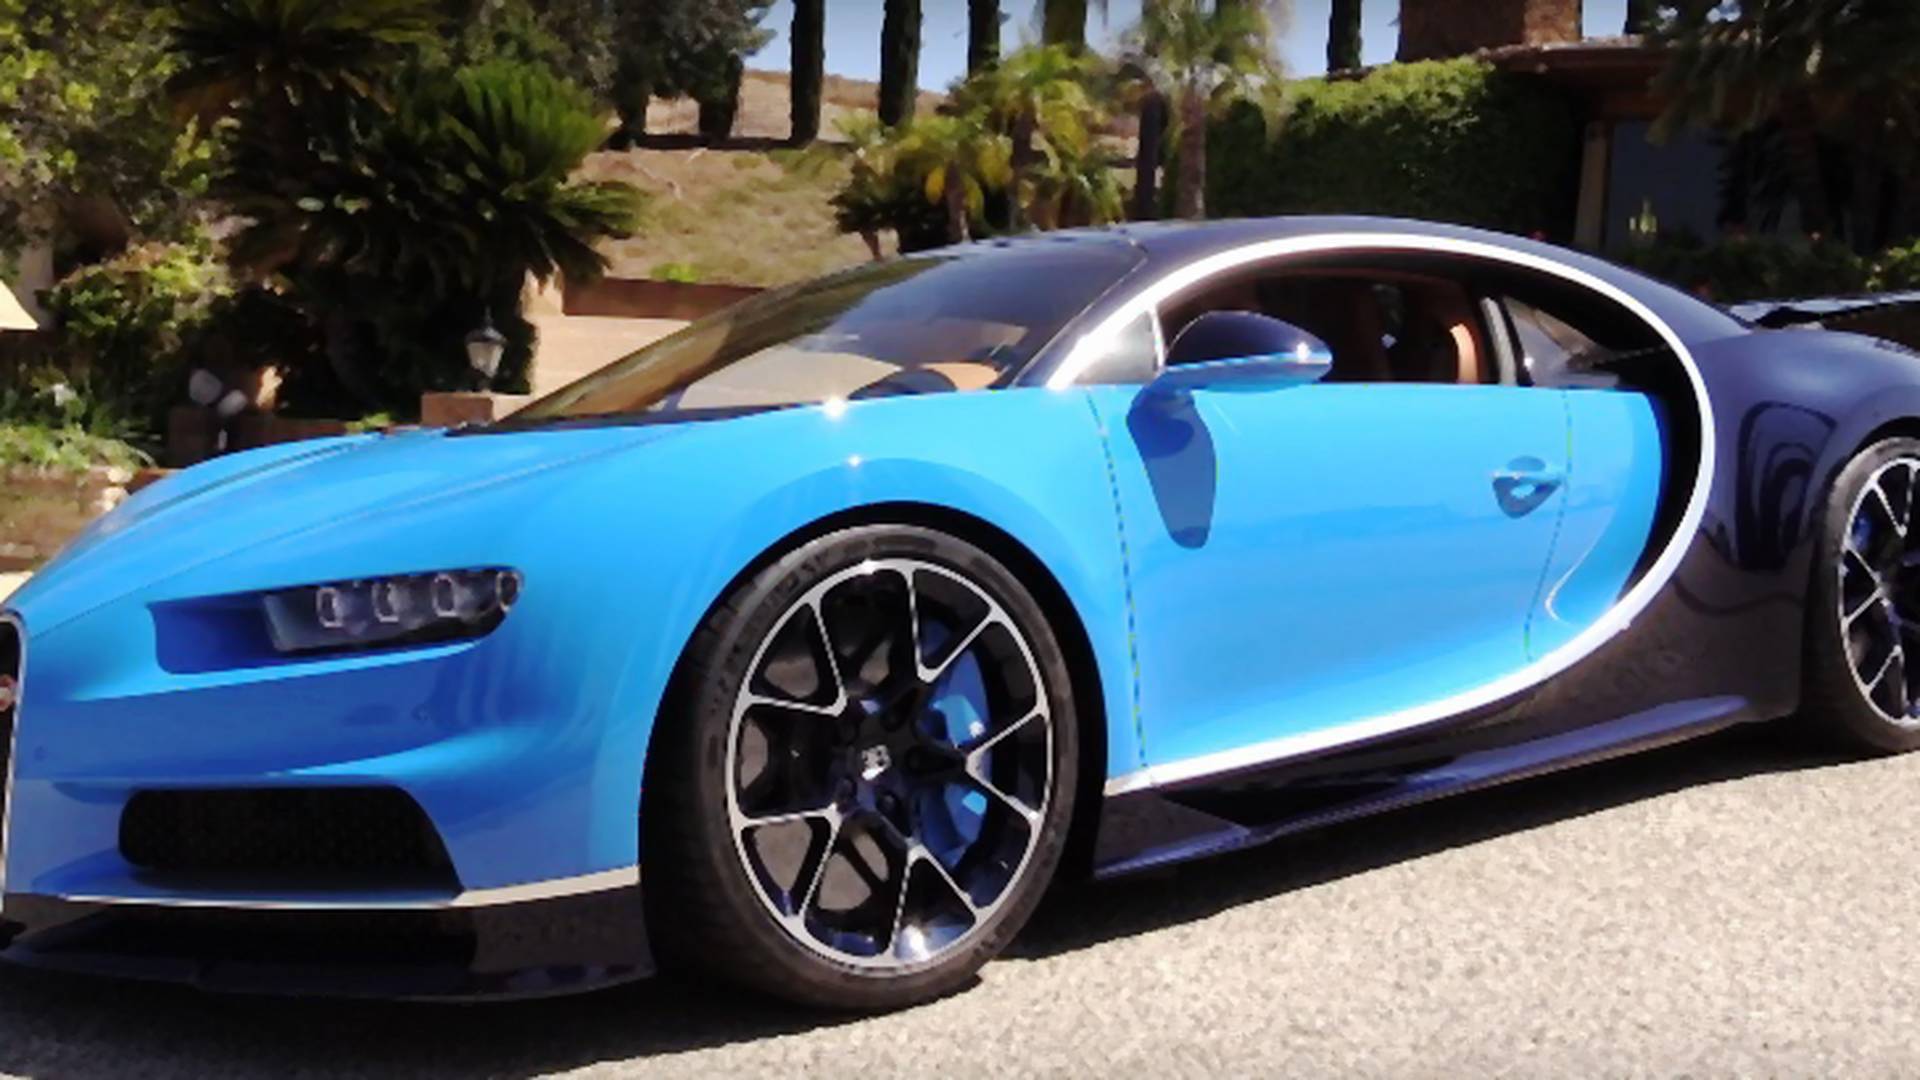 Itt a legújabb Bugatti modell, ráadásul két keréken